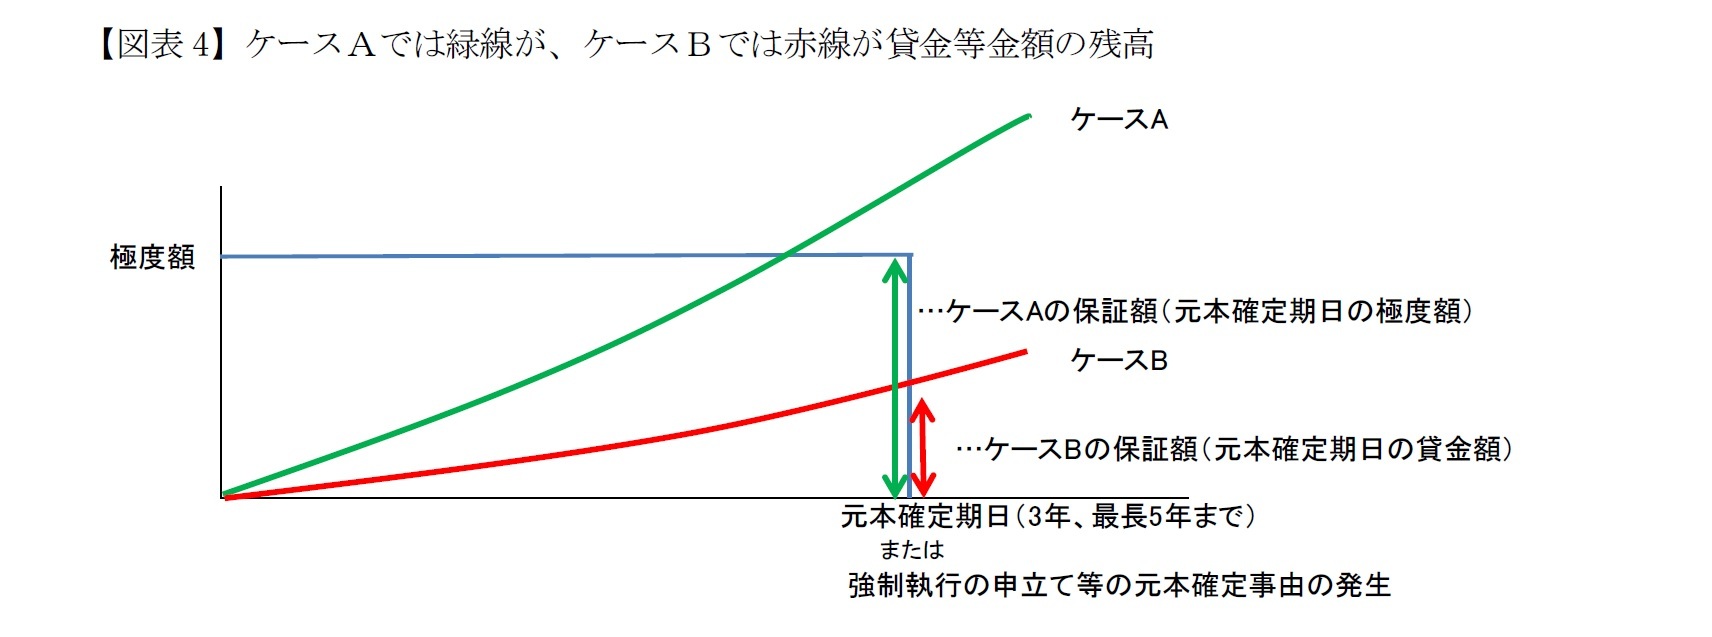 【図表4】ケースＡでは緑線が、ケースＢでは赤線が貸金等金額の残高